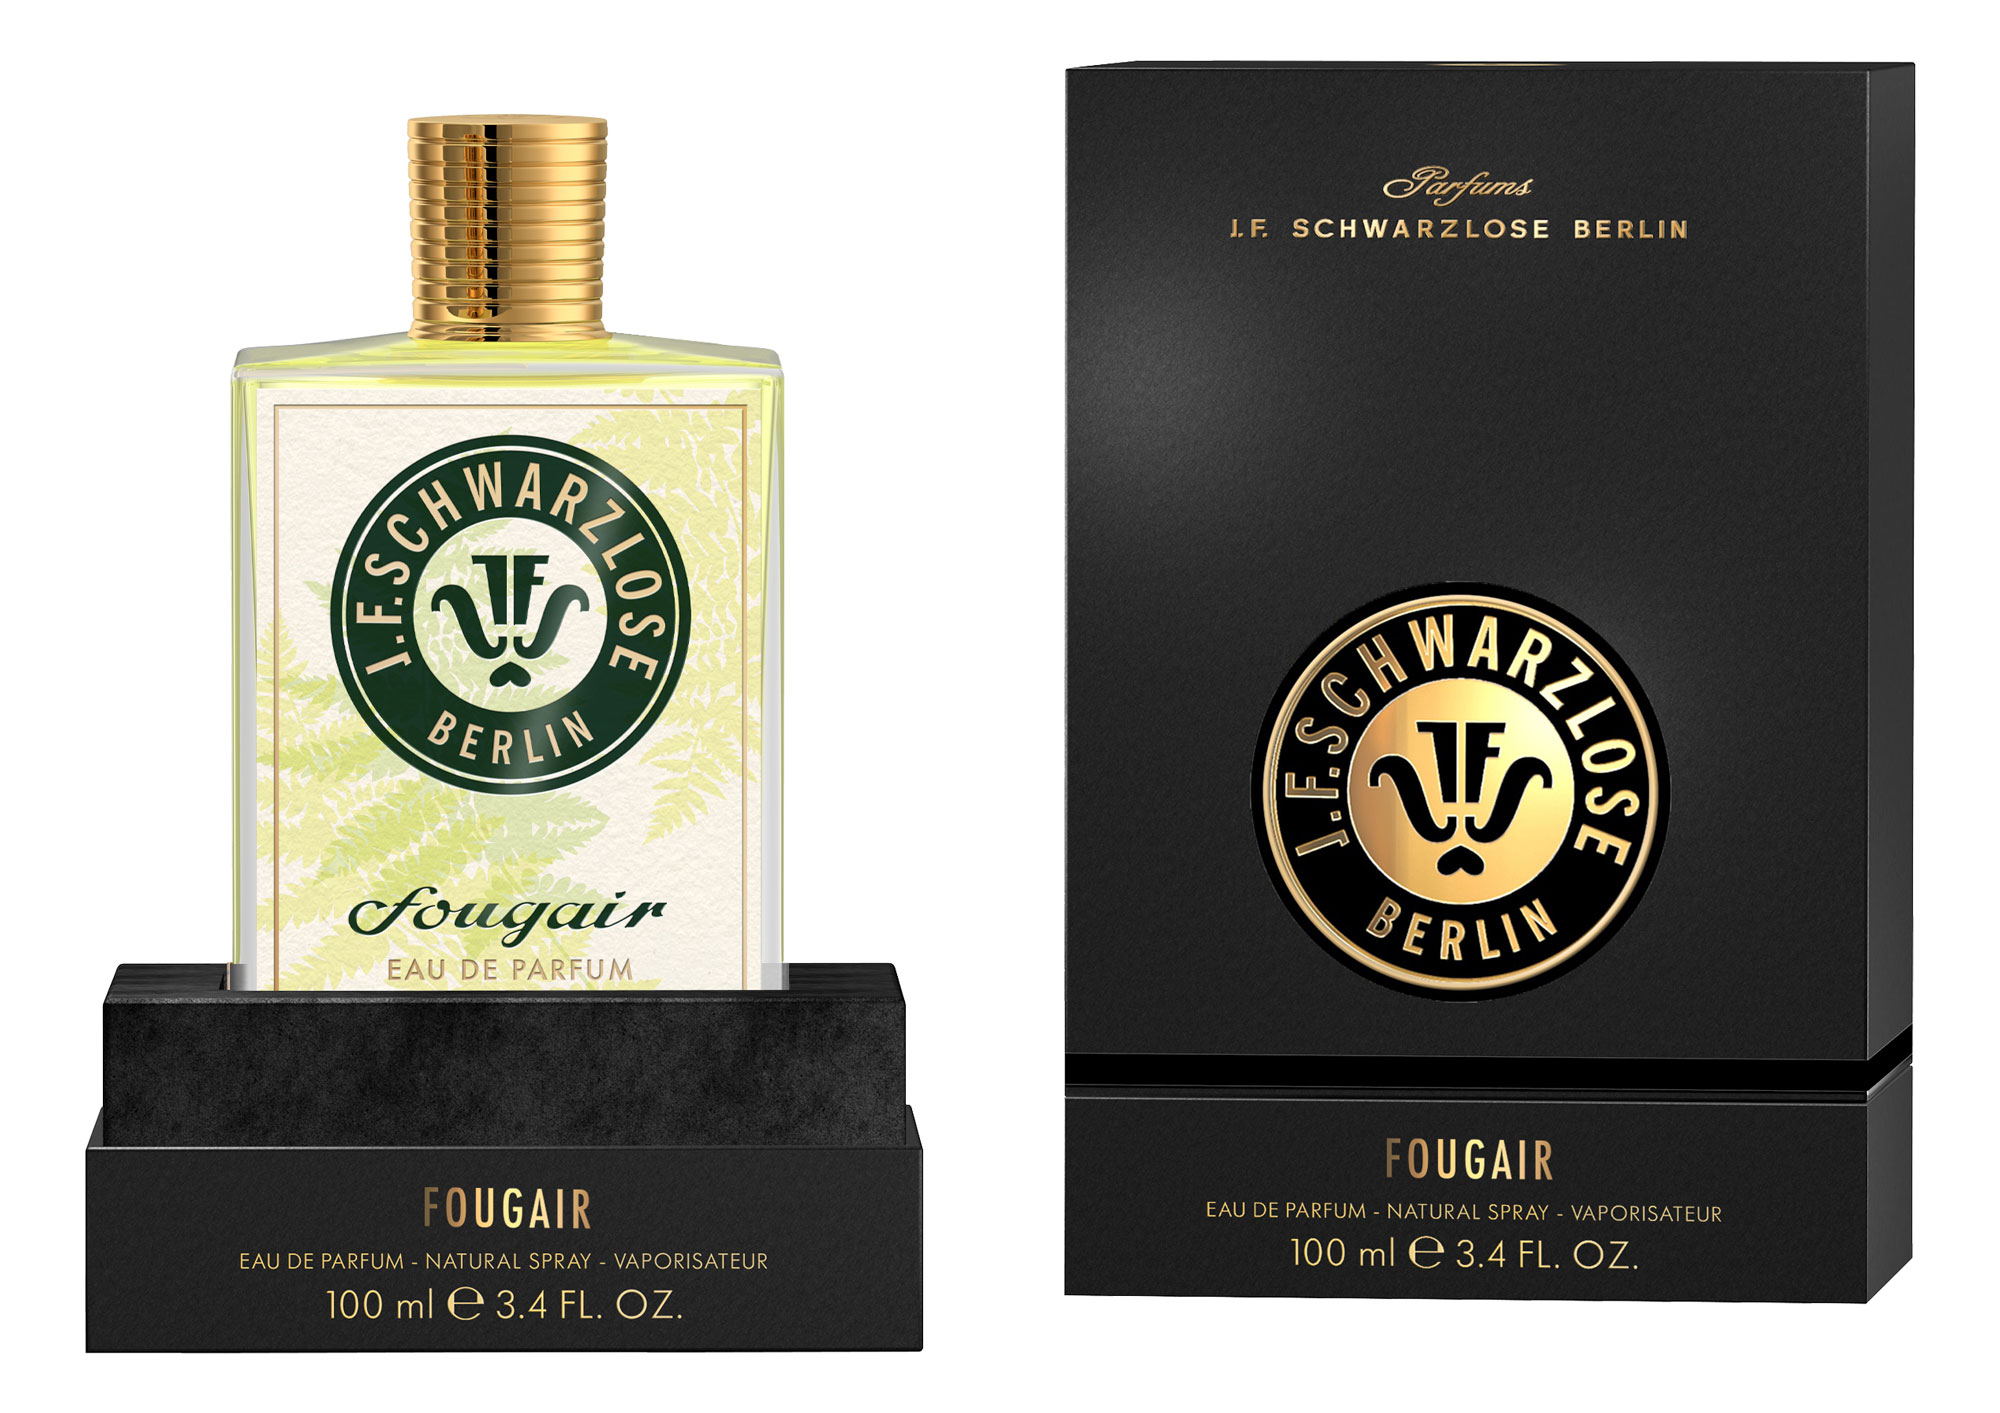 Fougair Eau de Parfum | For urban free spritis from J. F.